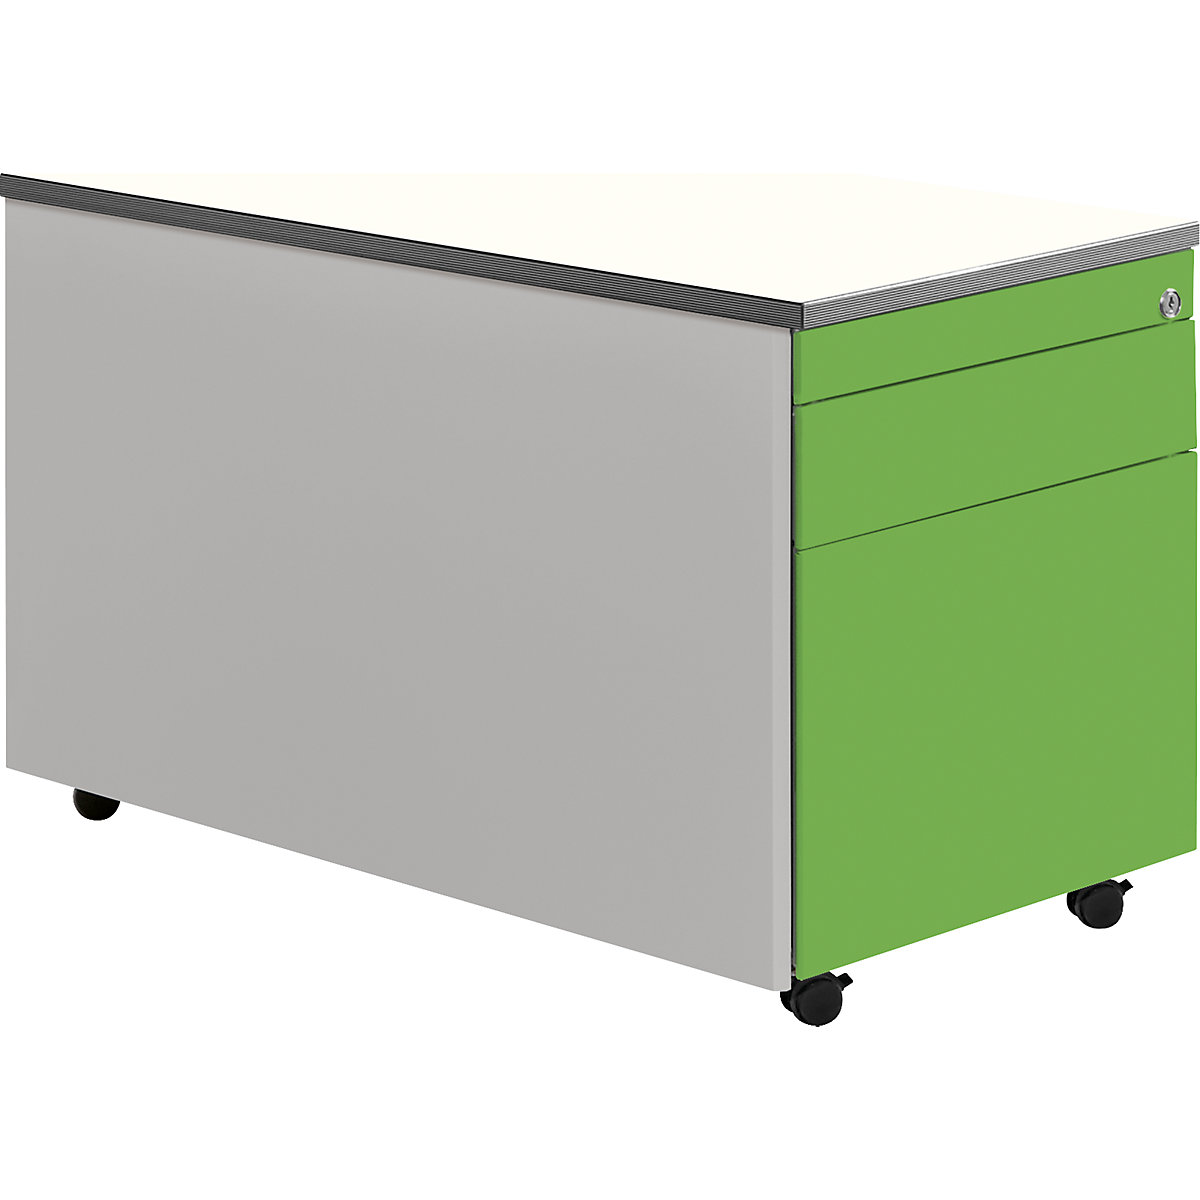 Casetieră cu sertare cu role – mauser, î. x ad. 529 x 800 mm, 1 sertar pentru materiale, 1 registratură suspendată, alb aluminiu / verde gălbui / alb